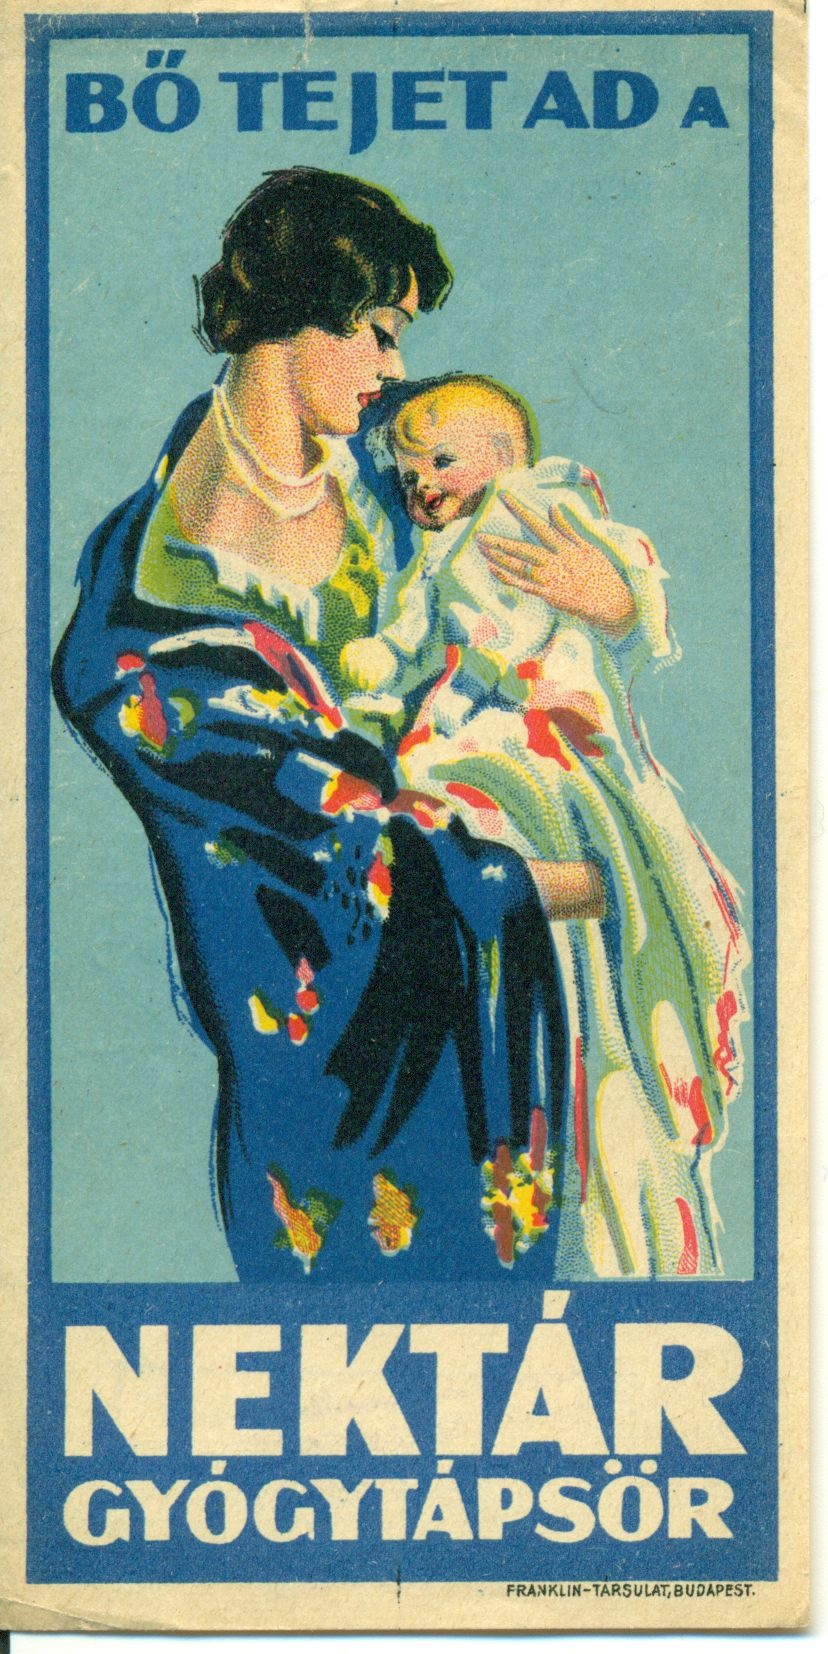 Kék háttér előtt egy anyuka tartja kezében a kisbabáját. Felirat: Bő tejet ad a Nektár Gyógytápsör.